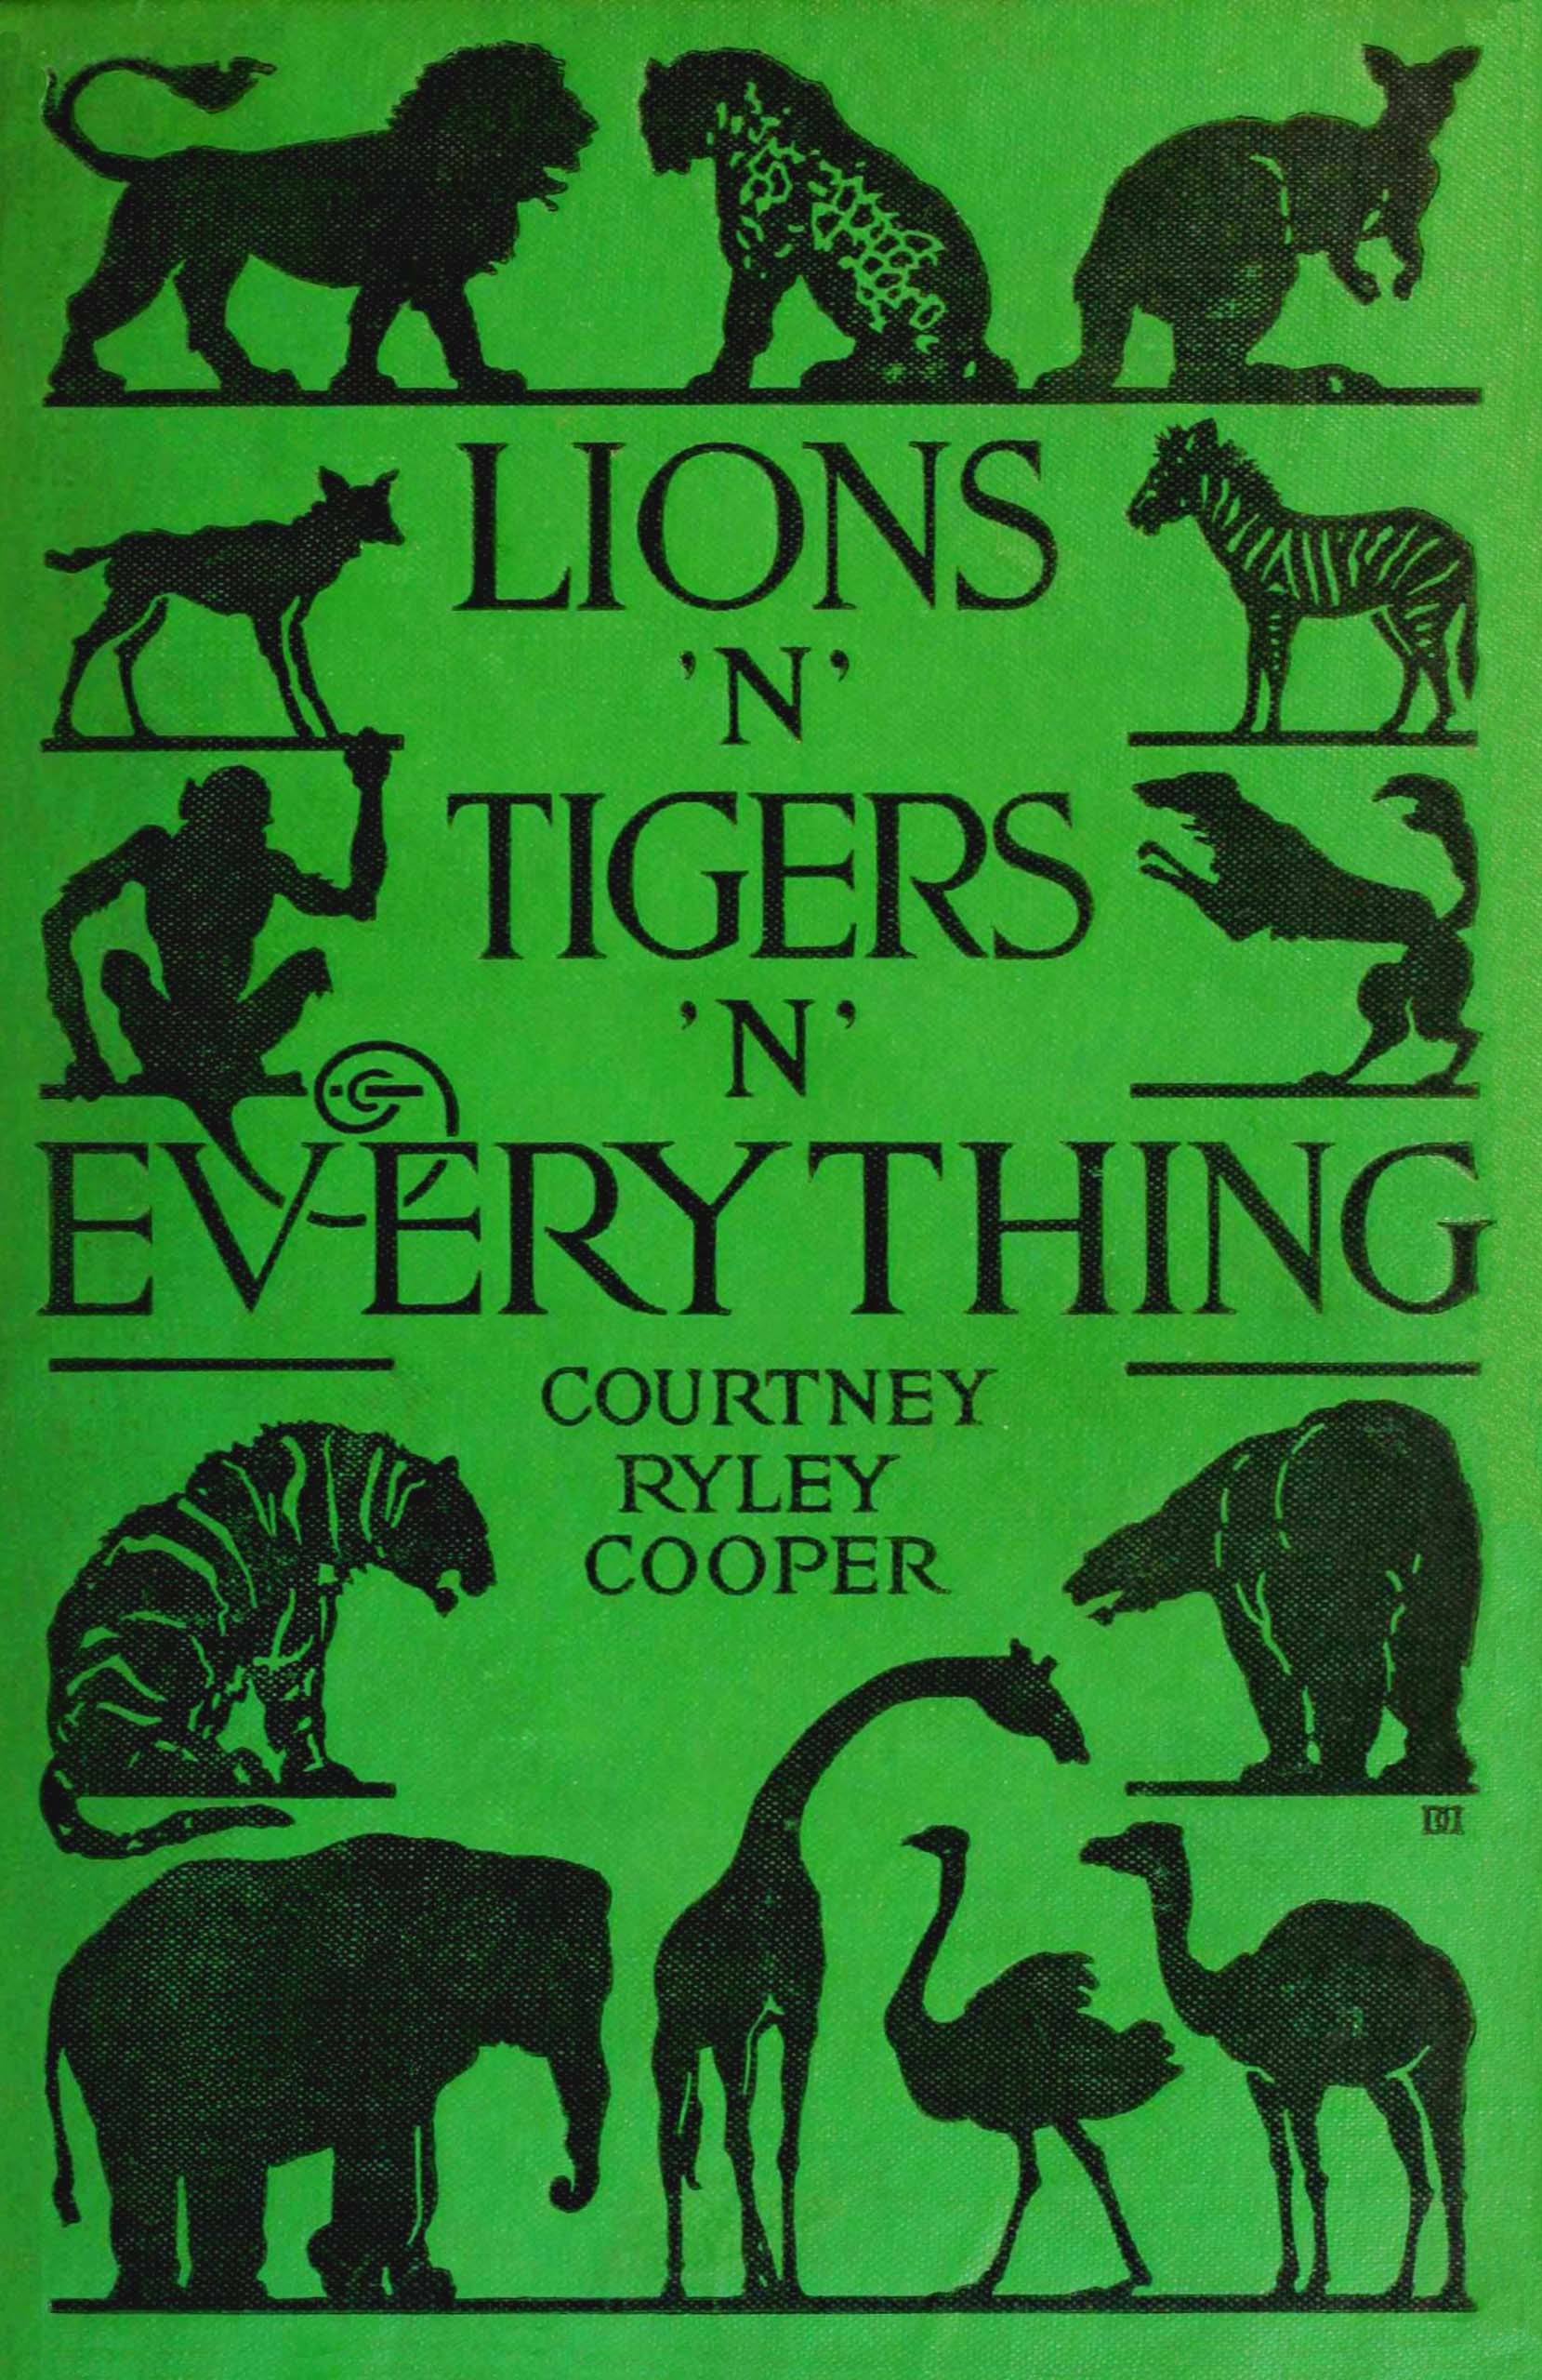 Lions 'n' tigers 'n' everything